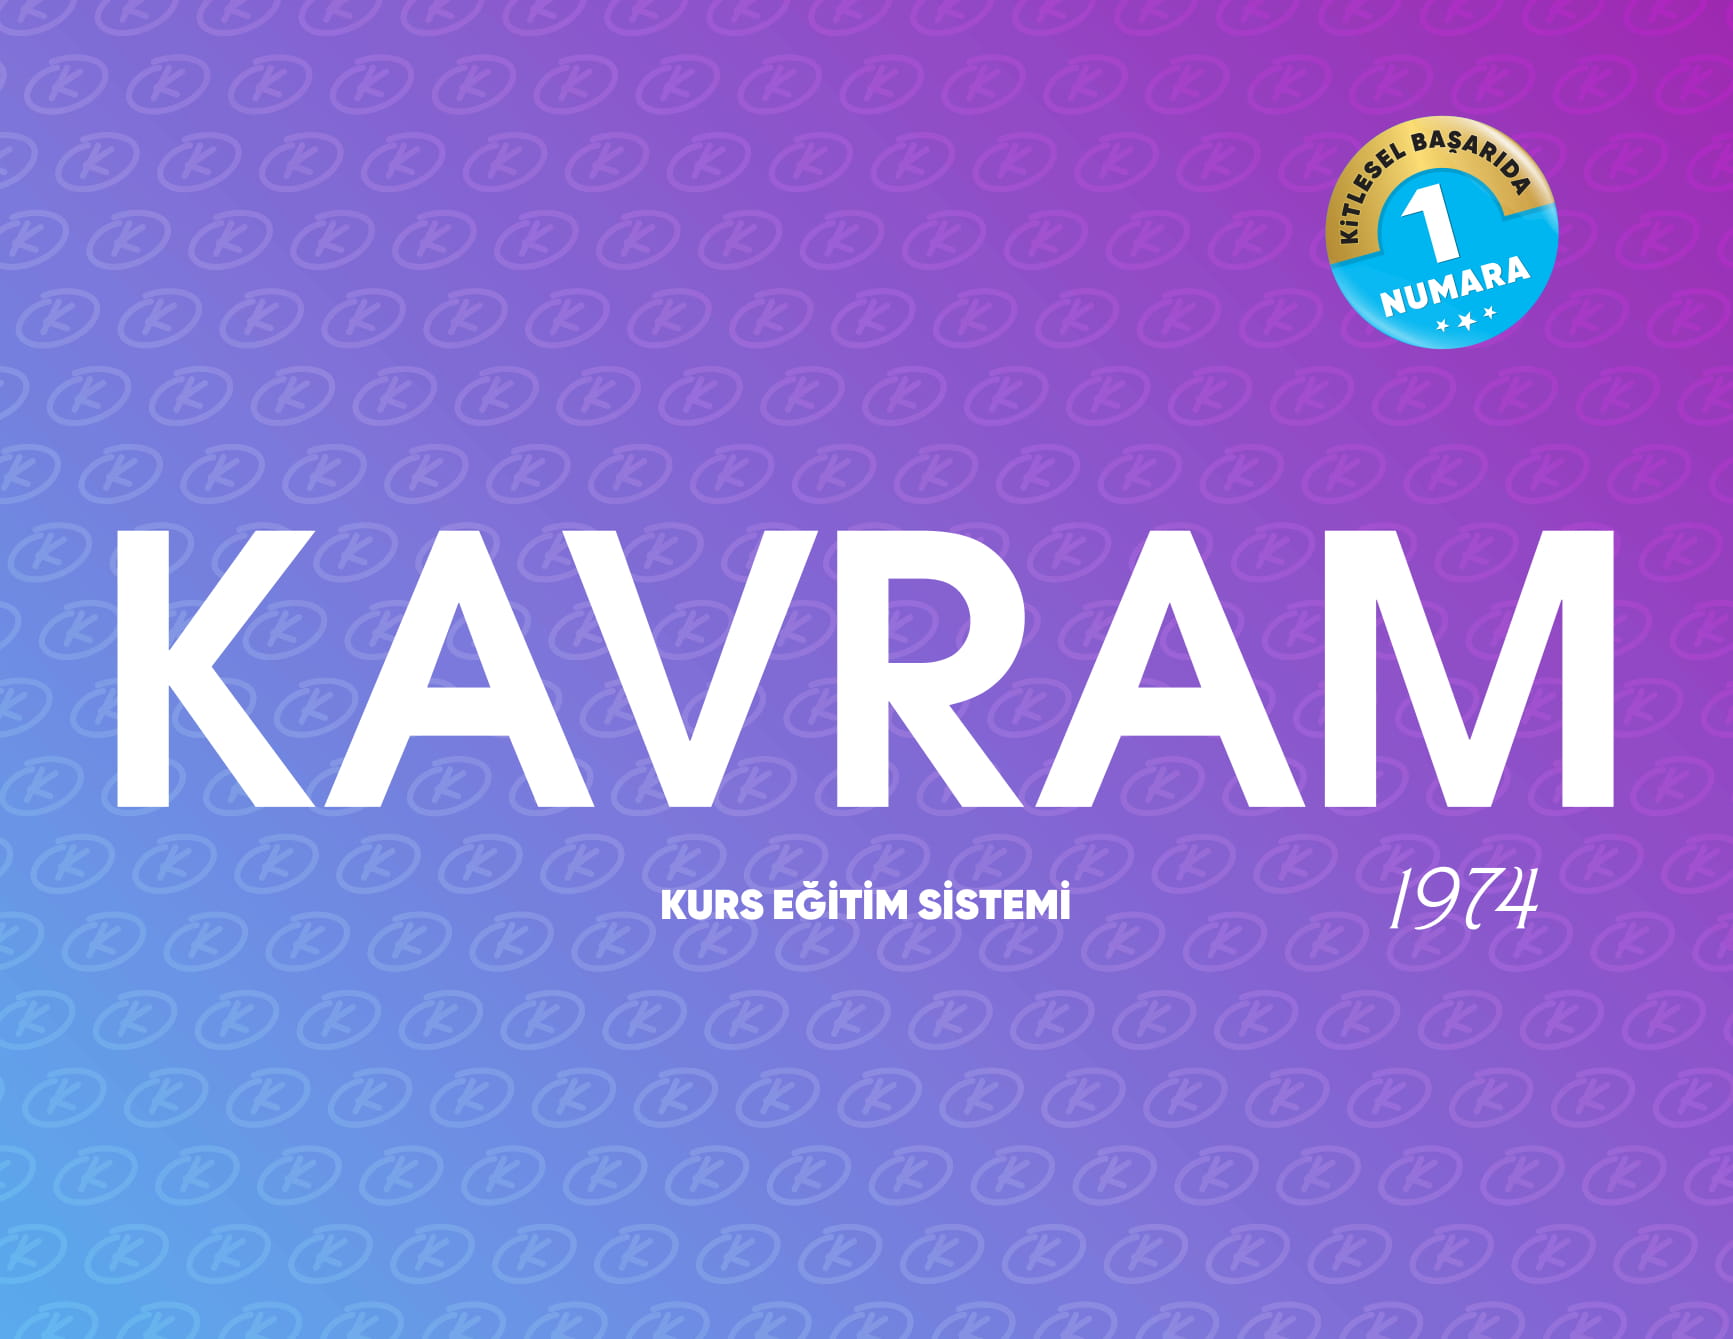 kavram_yatay_logo.png